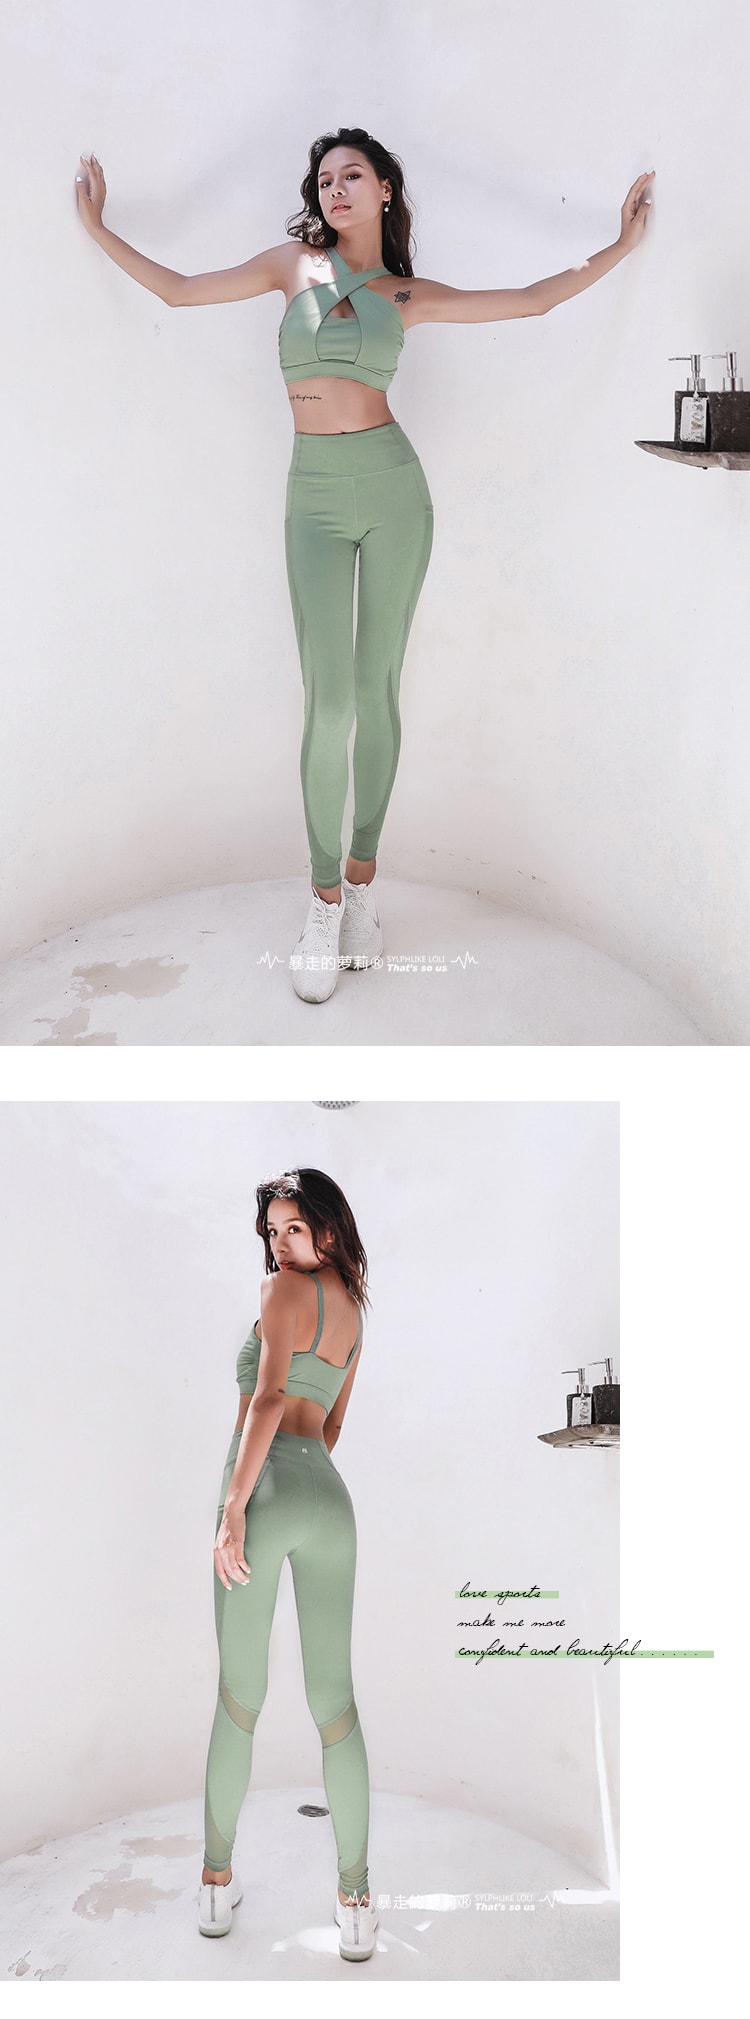 暴走的萝莉 拼接网纱健身裤女夏季 弹力紧身提臀瑜伽跑步运动长裤/绿色#/XS